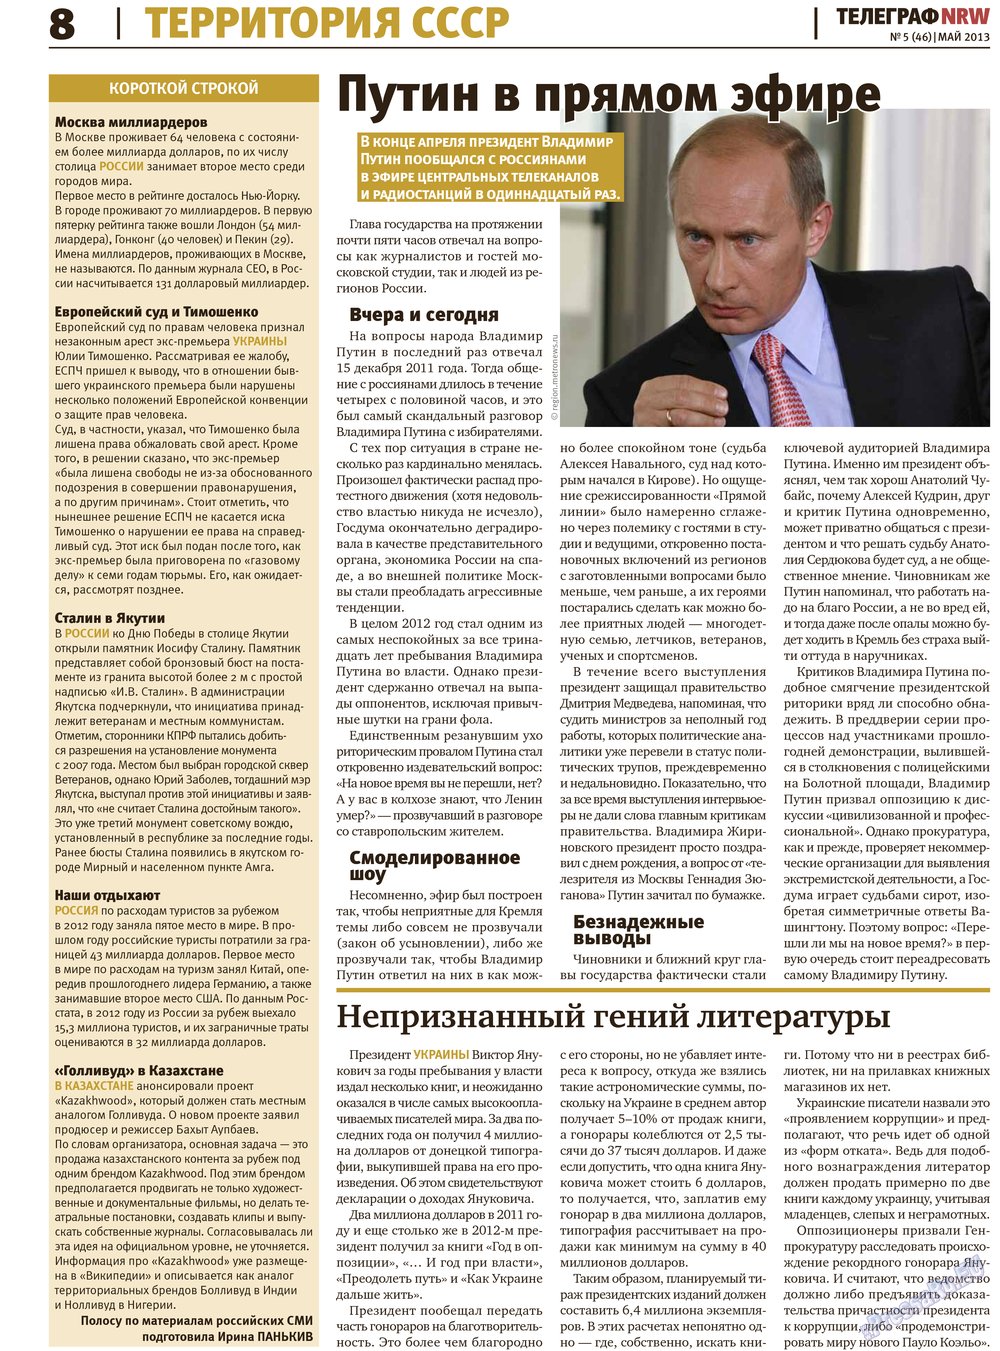 Телеграф NRW (газета). 2013 год, номер 5, стр. 8